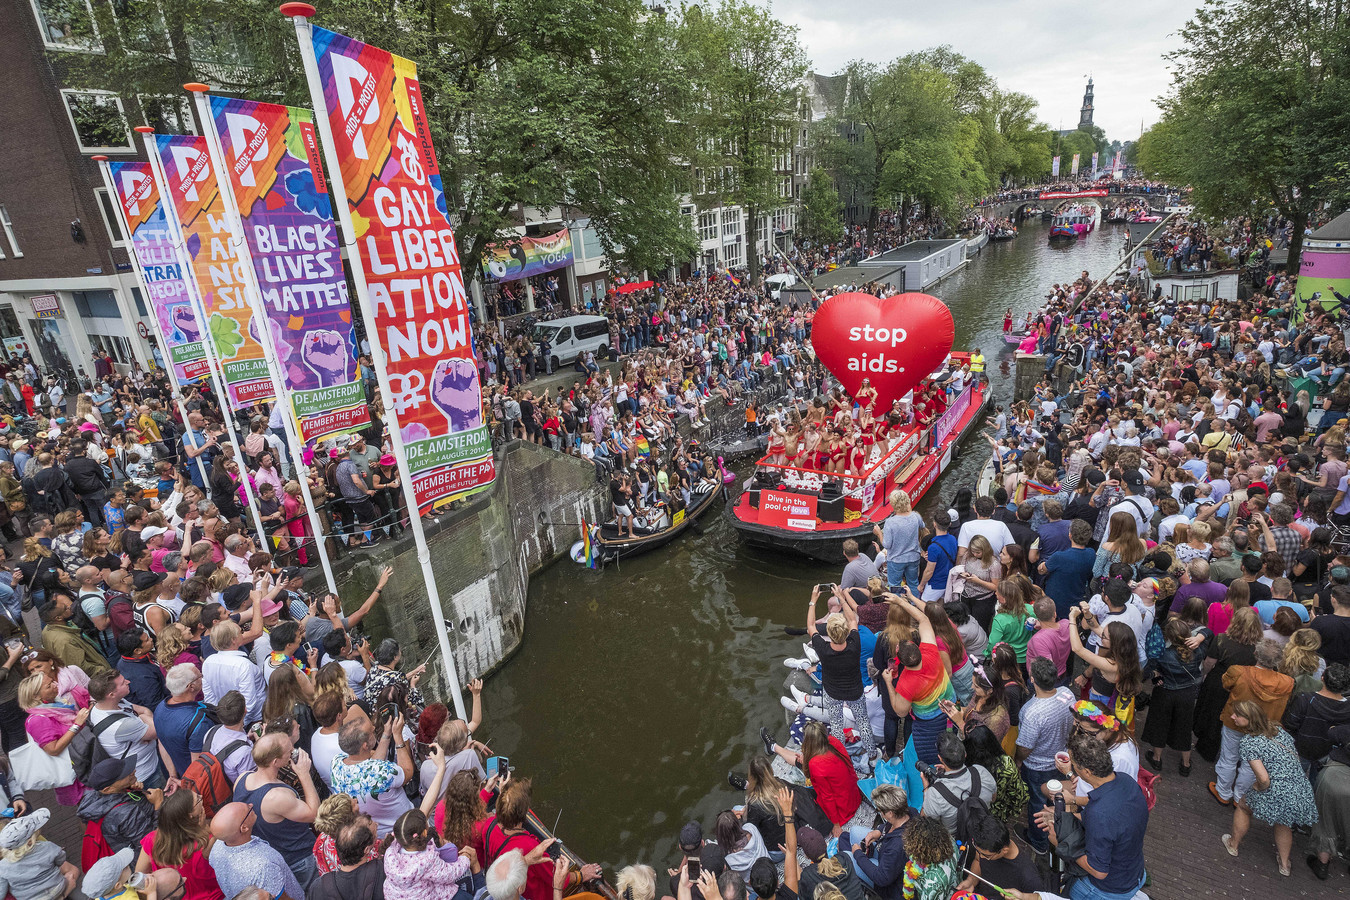 Coc Amsterdam Wil Huffnagel Weg Als Voorzitter Pride ‘vluchtelingenuitspraak Is Druppel Foto